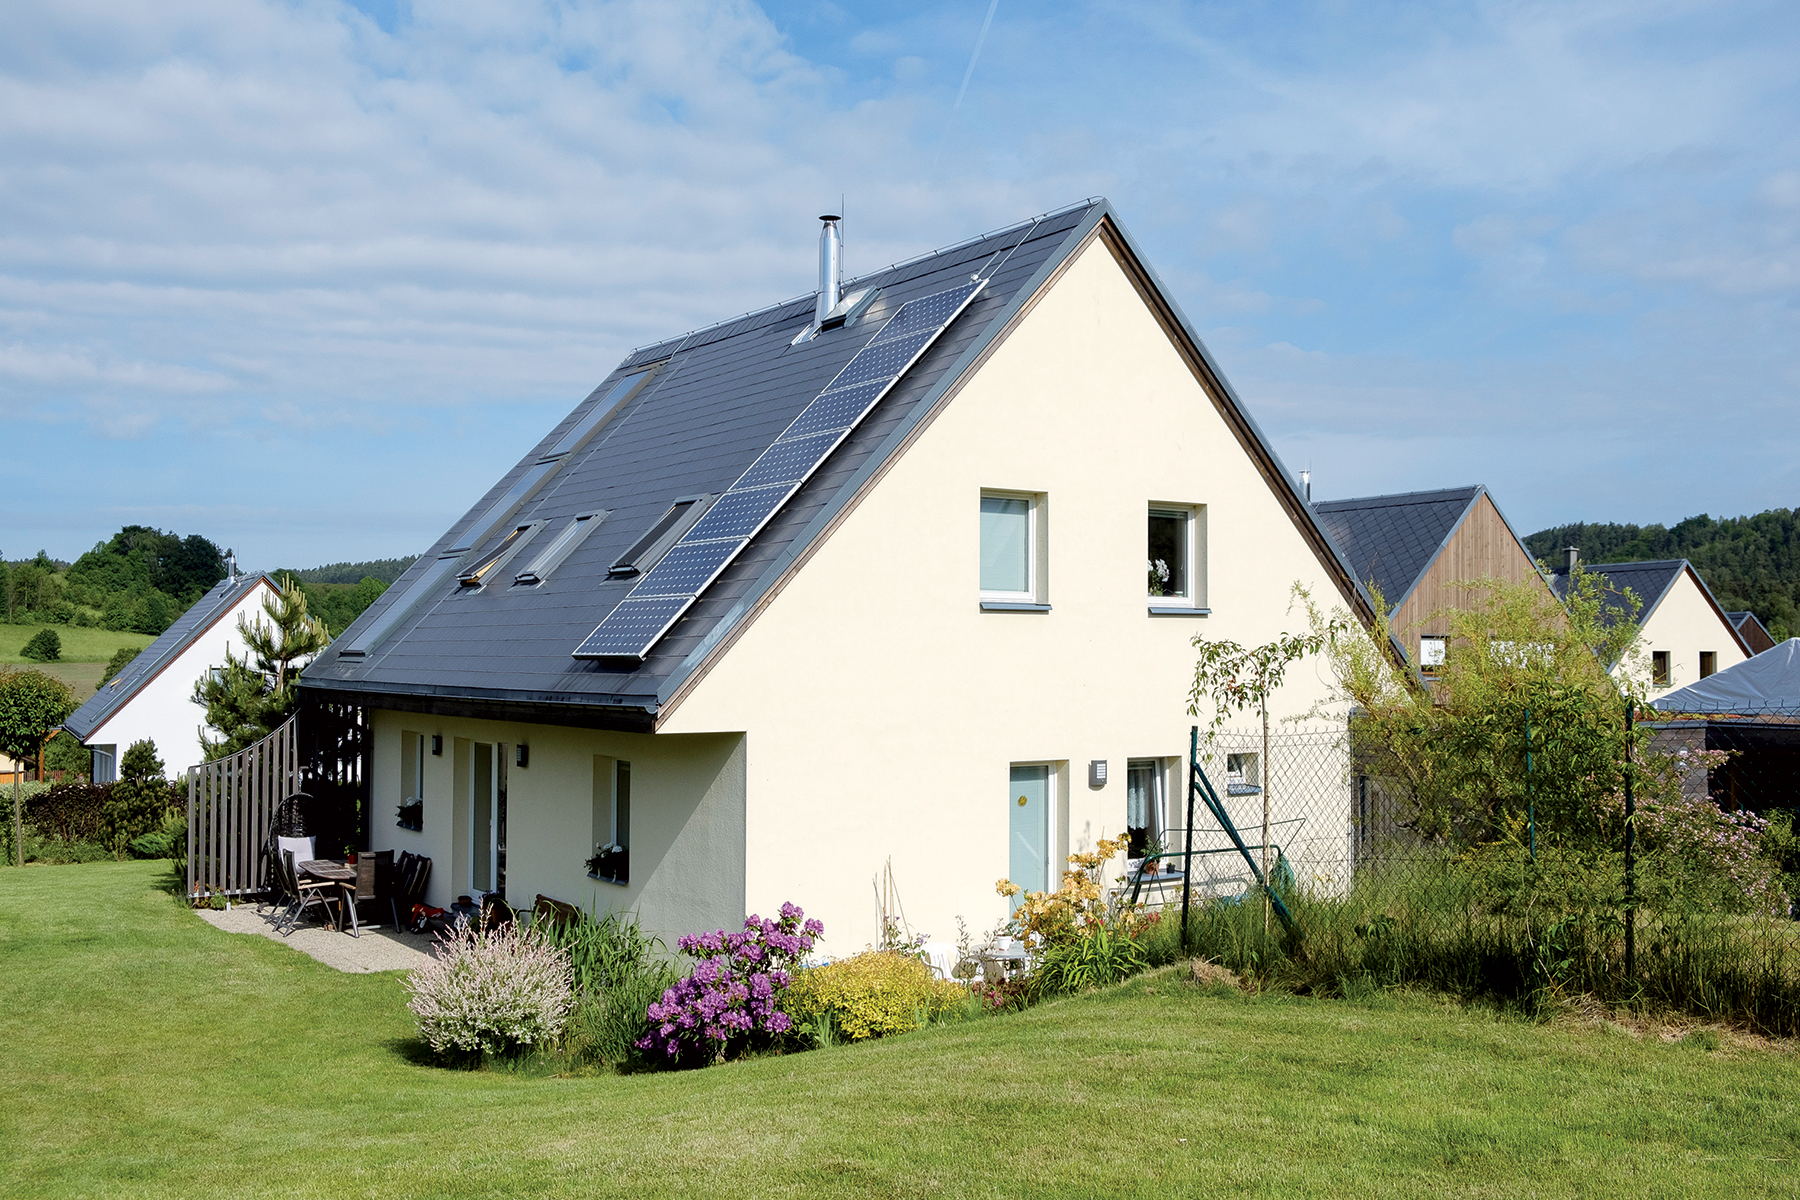 Jeden z pasívnych domov – vľavo vidieť solárne termické panely, vpravo fotovoltické panely (cca 1,1 kWp + batériový systém na zabezpečenie krátkodobej sebestačnosti).